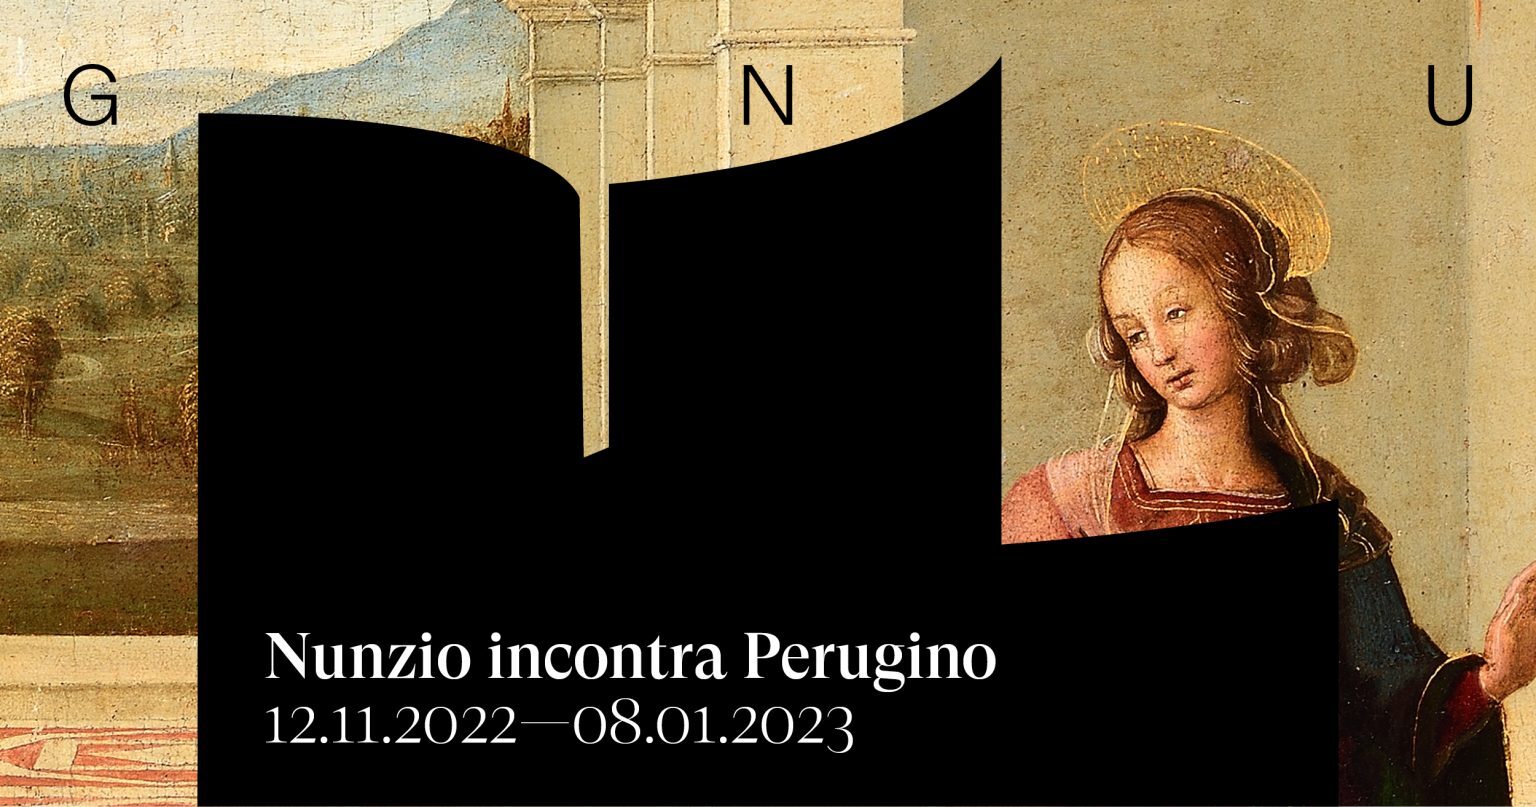 Nunzio incontra Perugino  mostra alla Galleria Nazionale dell'Umbria